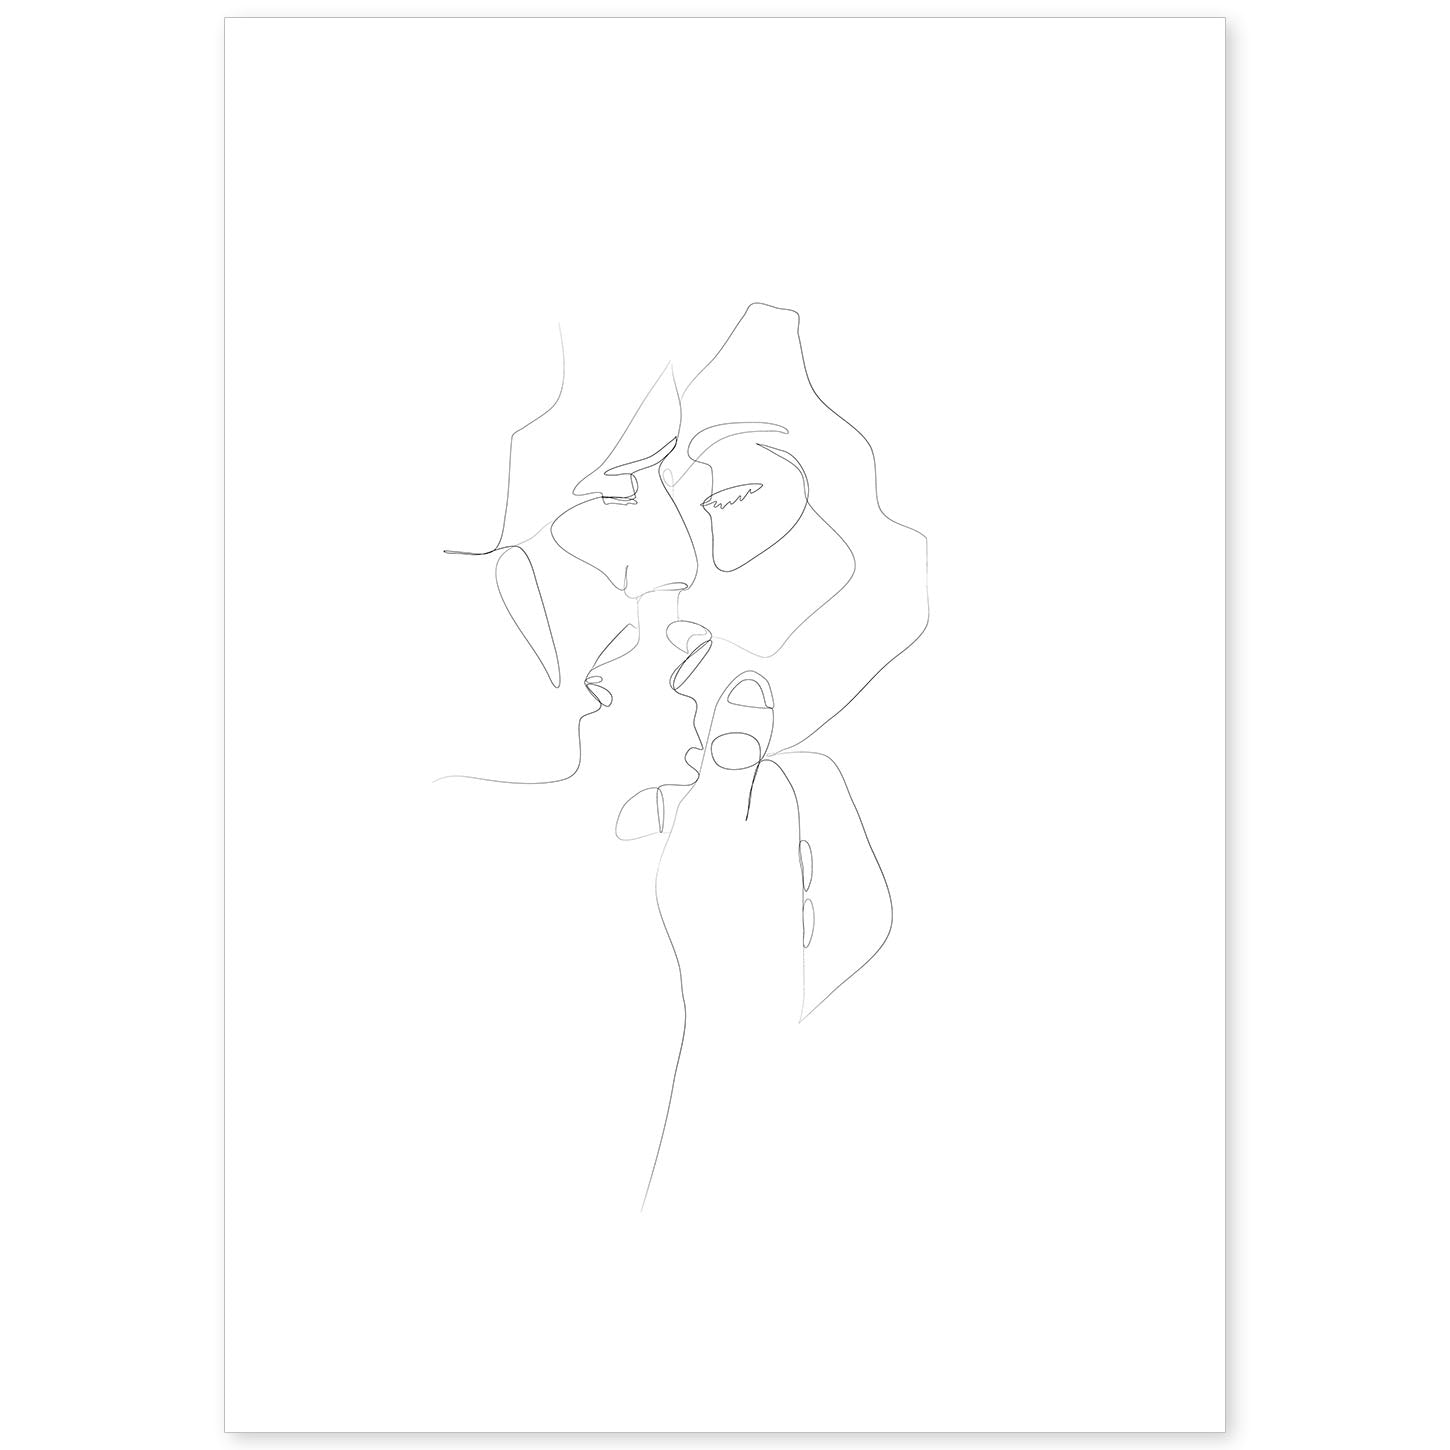 Cómo dibujar una pareja de enamorados besándose bajo la lluvia  Arte  Divierte  YouTube